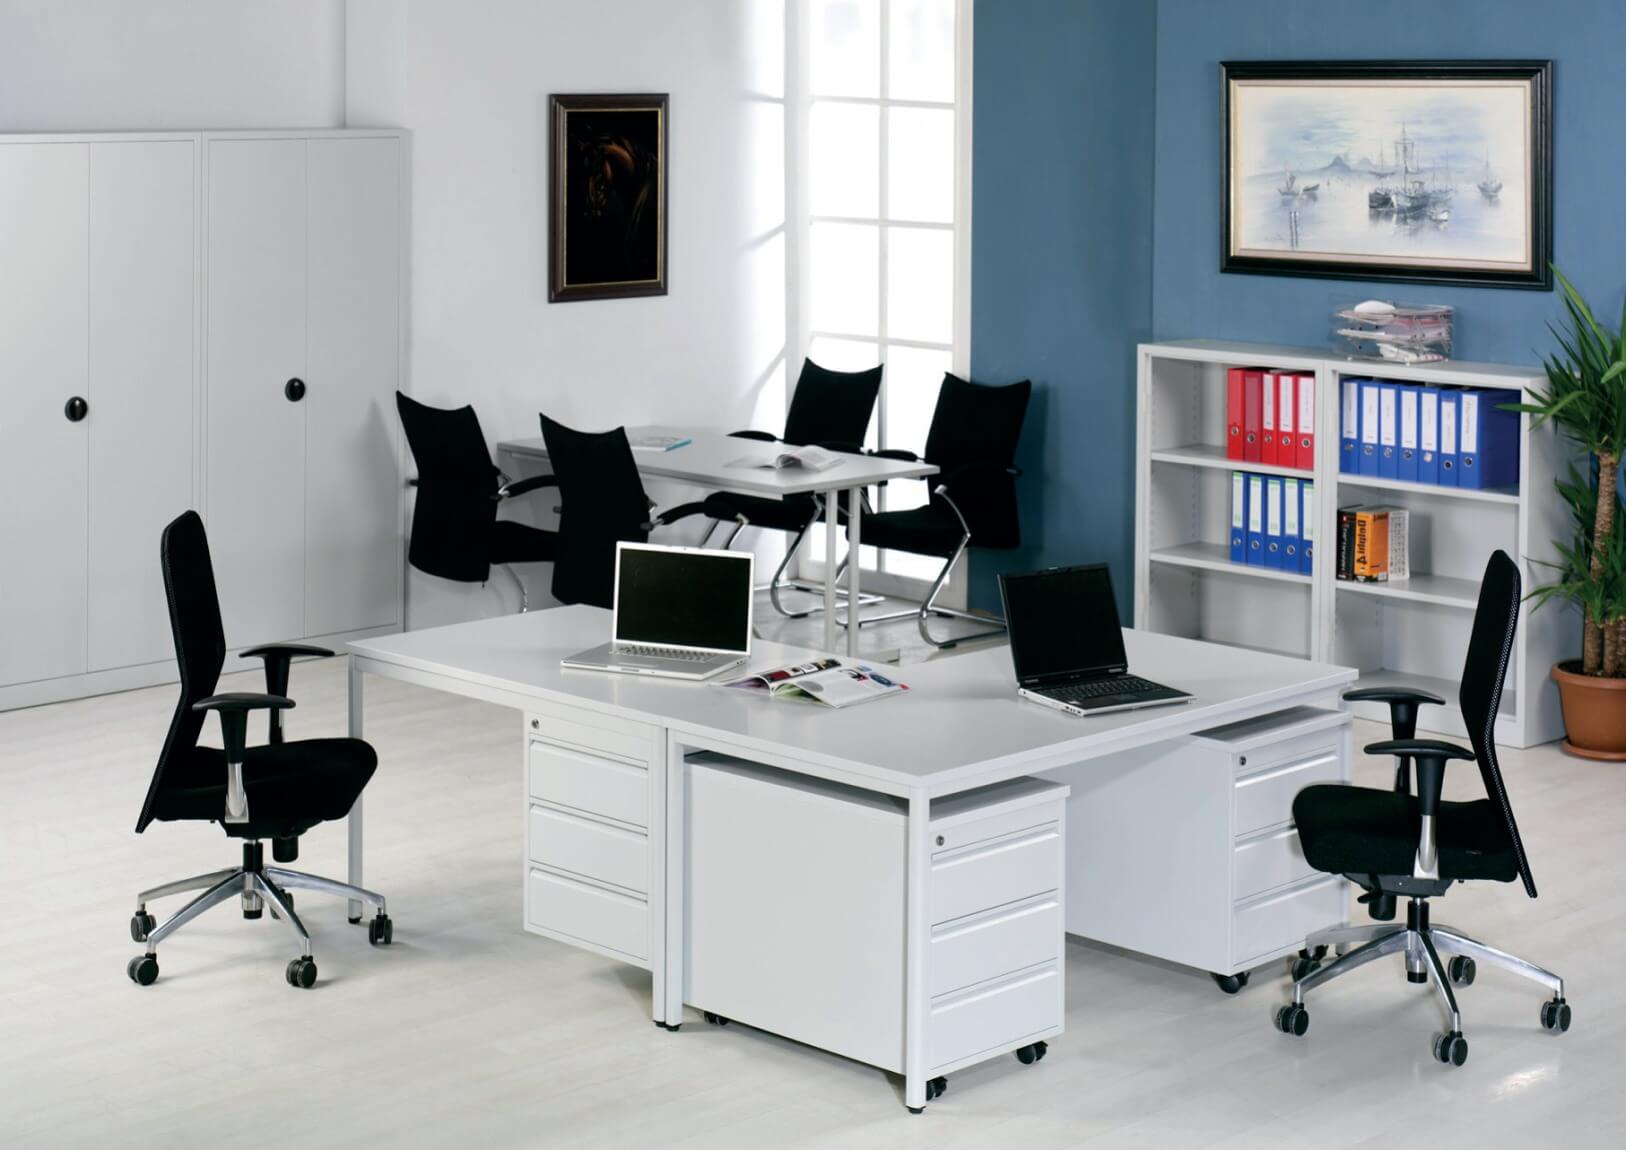 Ein Büro-Arbeitsplatz, der mit Steel Tischen, Regalen und Rollcontainern ausgestattet ist